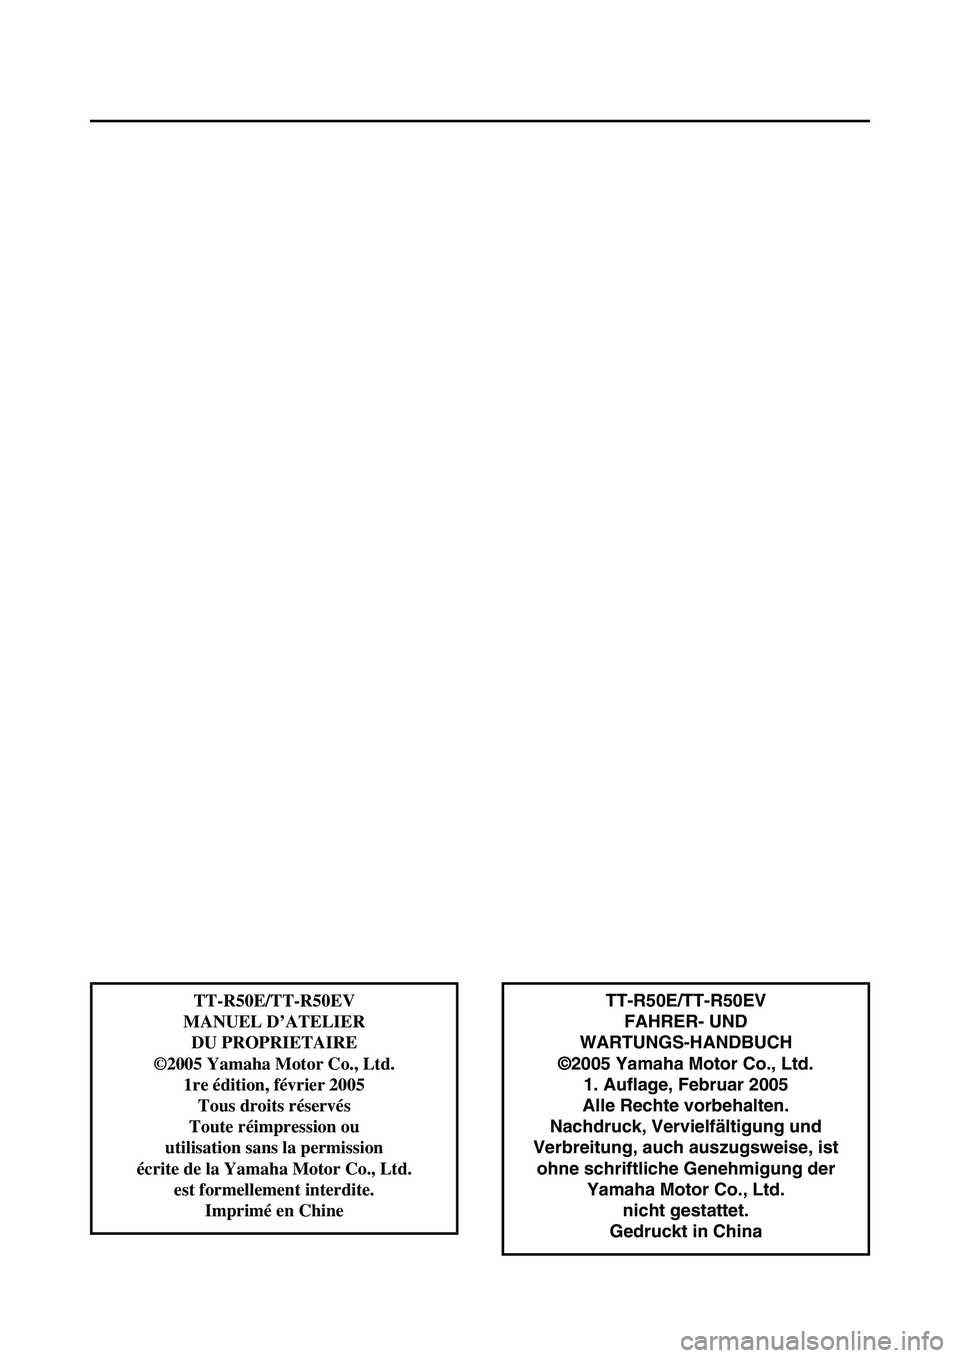 YAMAHA TTR50 2006  Notices Demploi (in French) 
TT-R50E/TT-R50EVFAHRER- UND 
WARTUNGS-HANDBUCH
©2005 Yamaha Motor Co., Ltd. 1. Auflage, Februar 2005
Alle Rechte vorbehalten.
Nachdruck, Vervielfältigung und
Verbreitung, auch auszugsweise, ist  oh